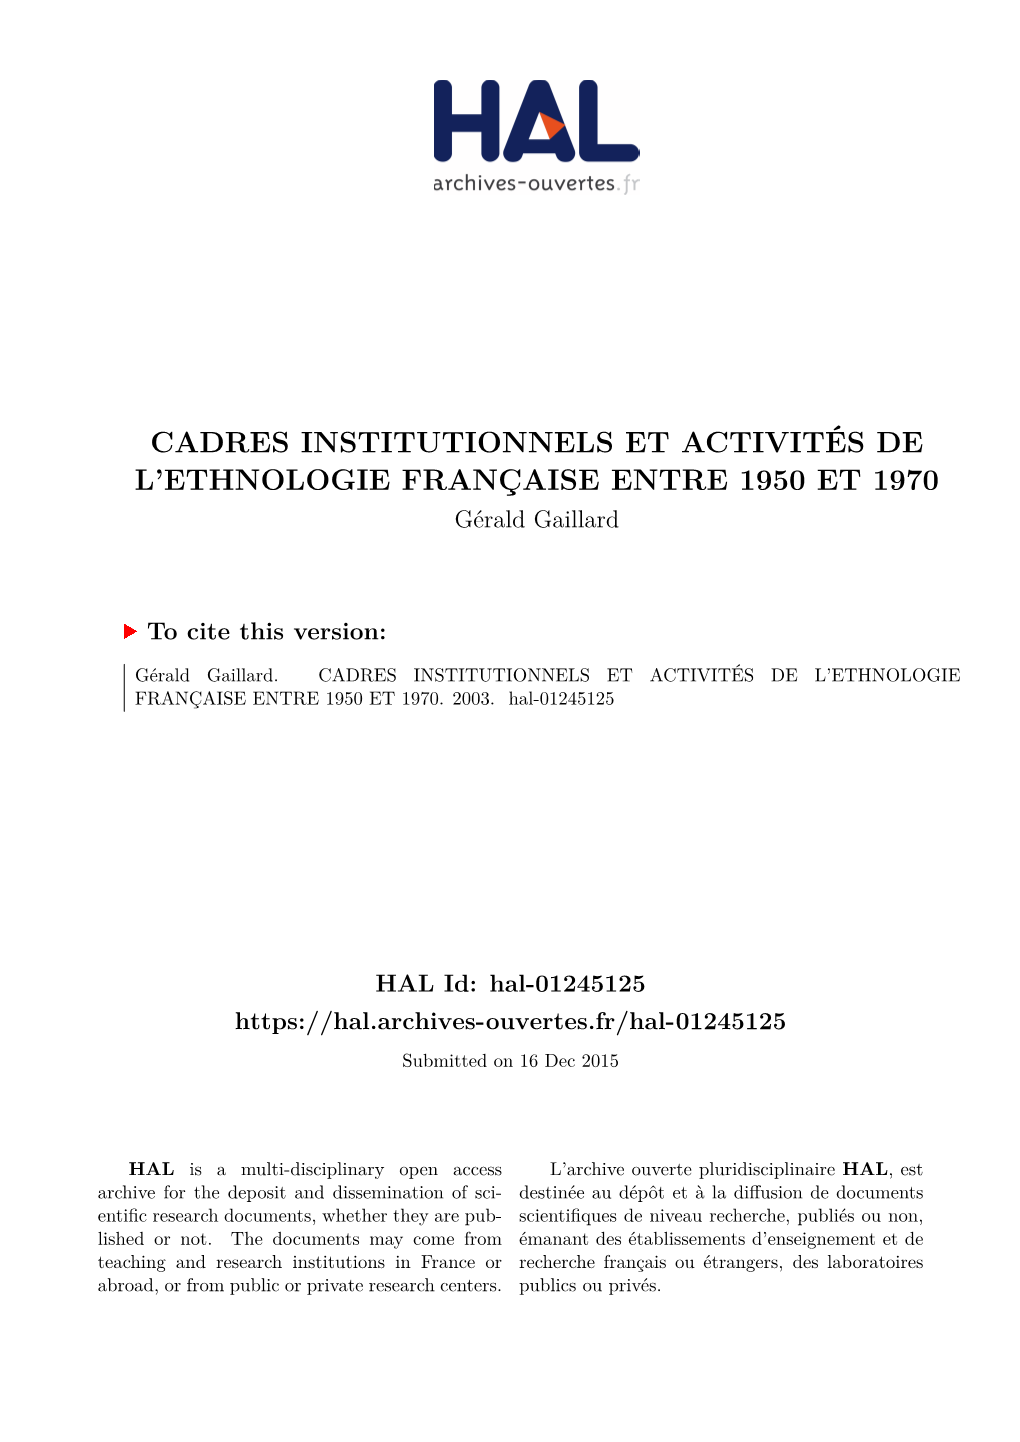 Cadres Institutionnels Et Activités De L'ethnologie Française Entre 1950 Et 1970